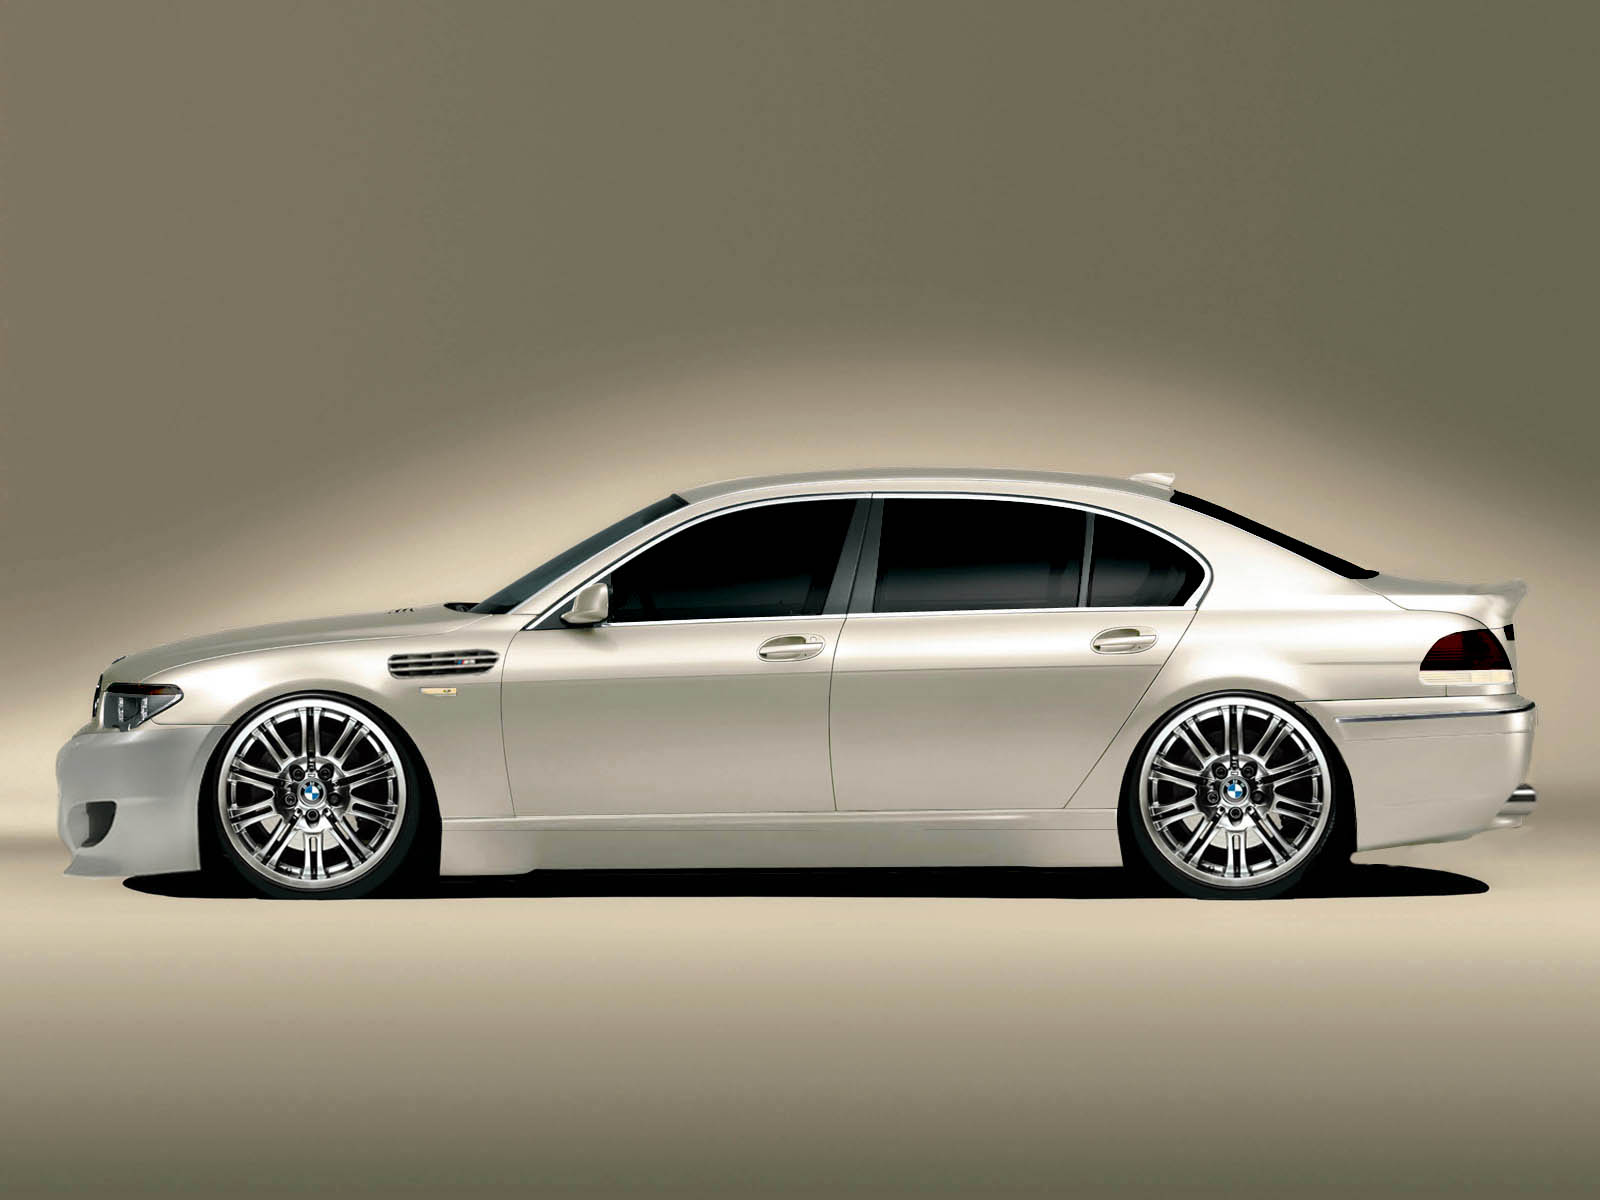 BMW M7 2012-13 | Stylish Bmw New 7 Series 2012